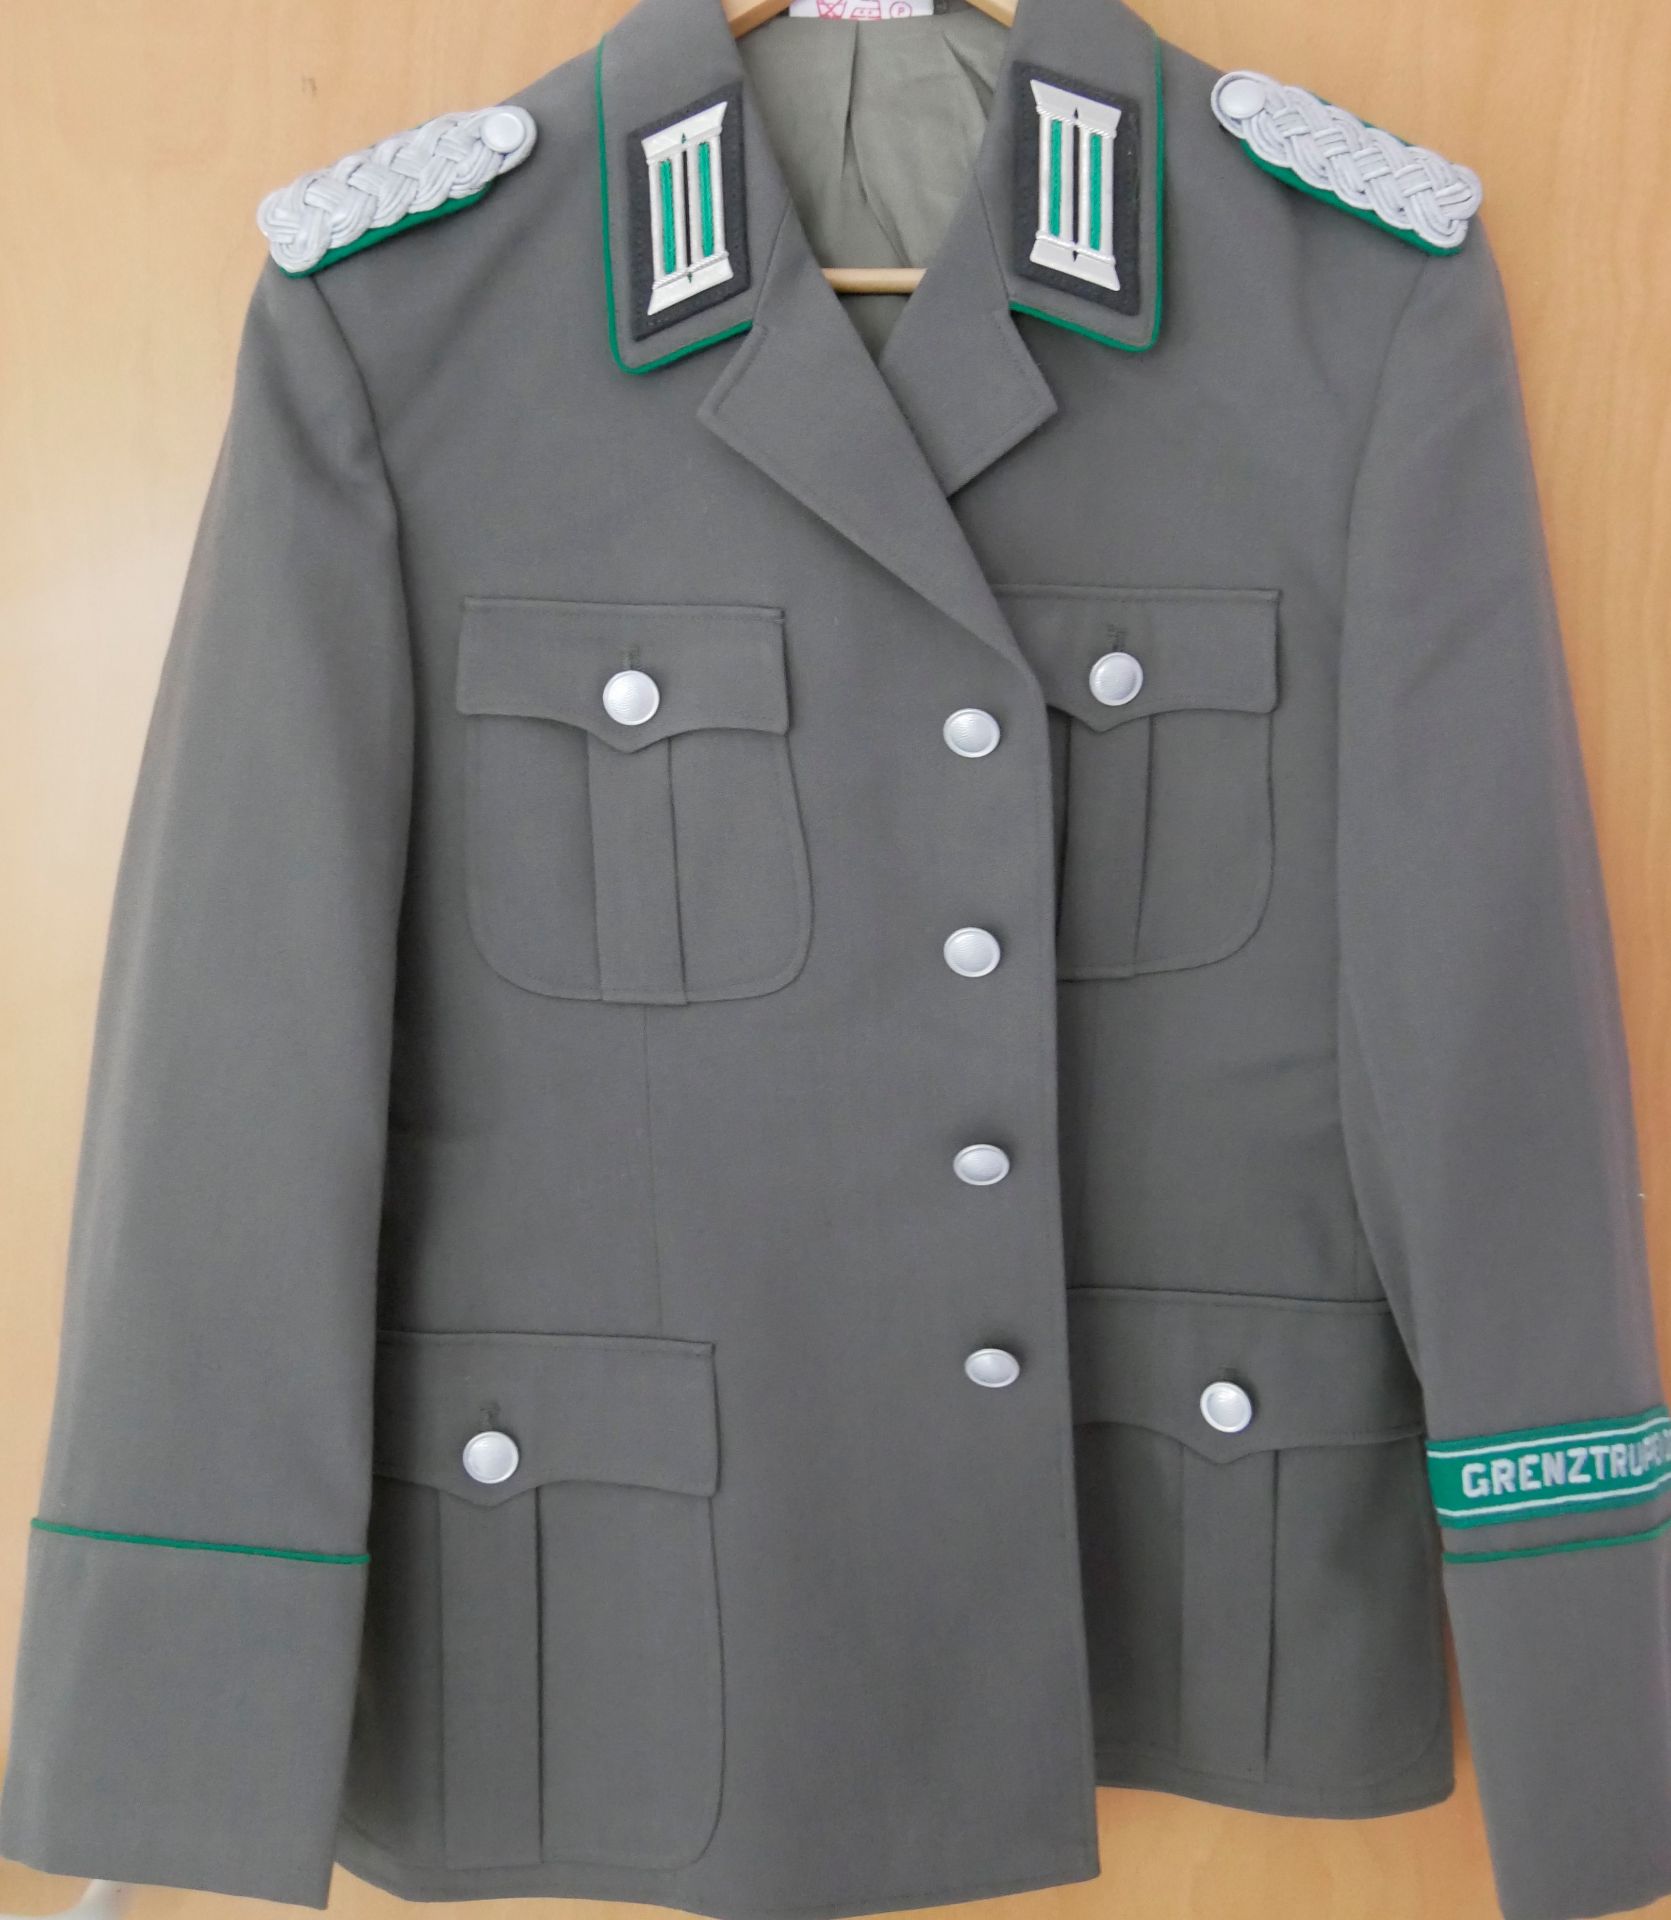 Aus Sammelauflösung! DDR Uniform Jacke mit Effekten "Grenztruppe der DDR" Gr. k 48, guter Zustand.